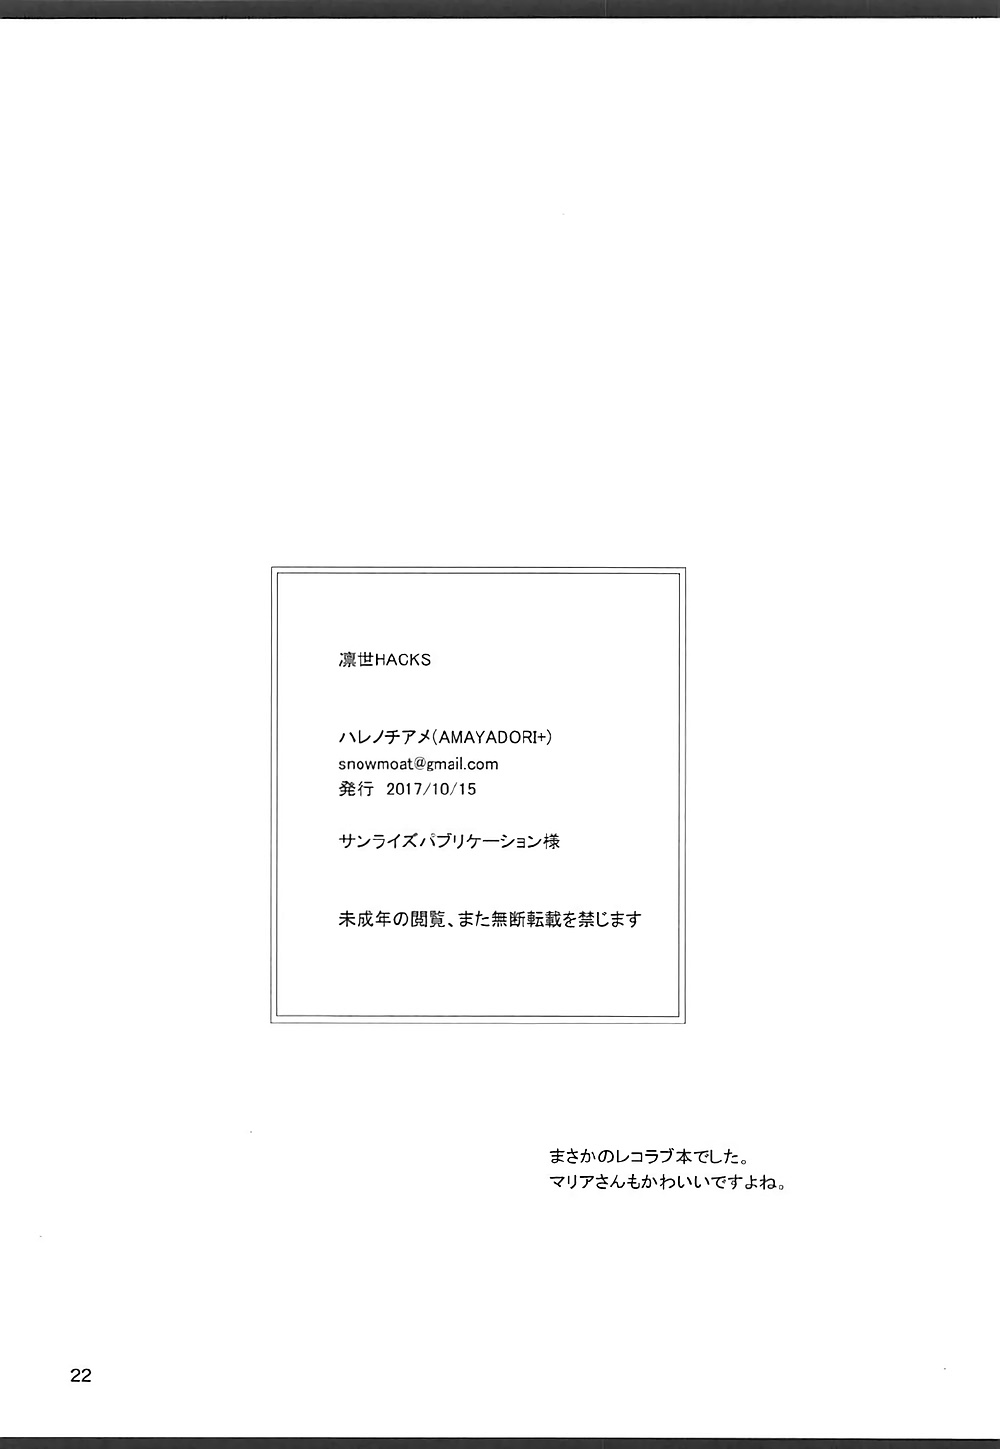 (COMIC1☆12) [AMAYADORI+ (ハレノチアメ)] 凛世HACKS (レコラヴ)